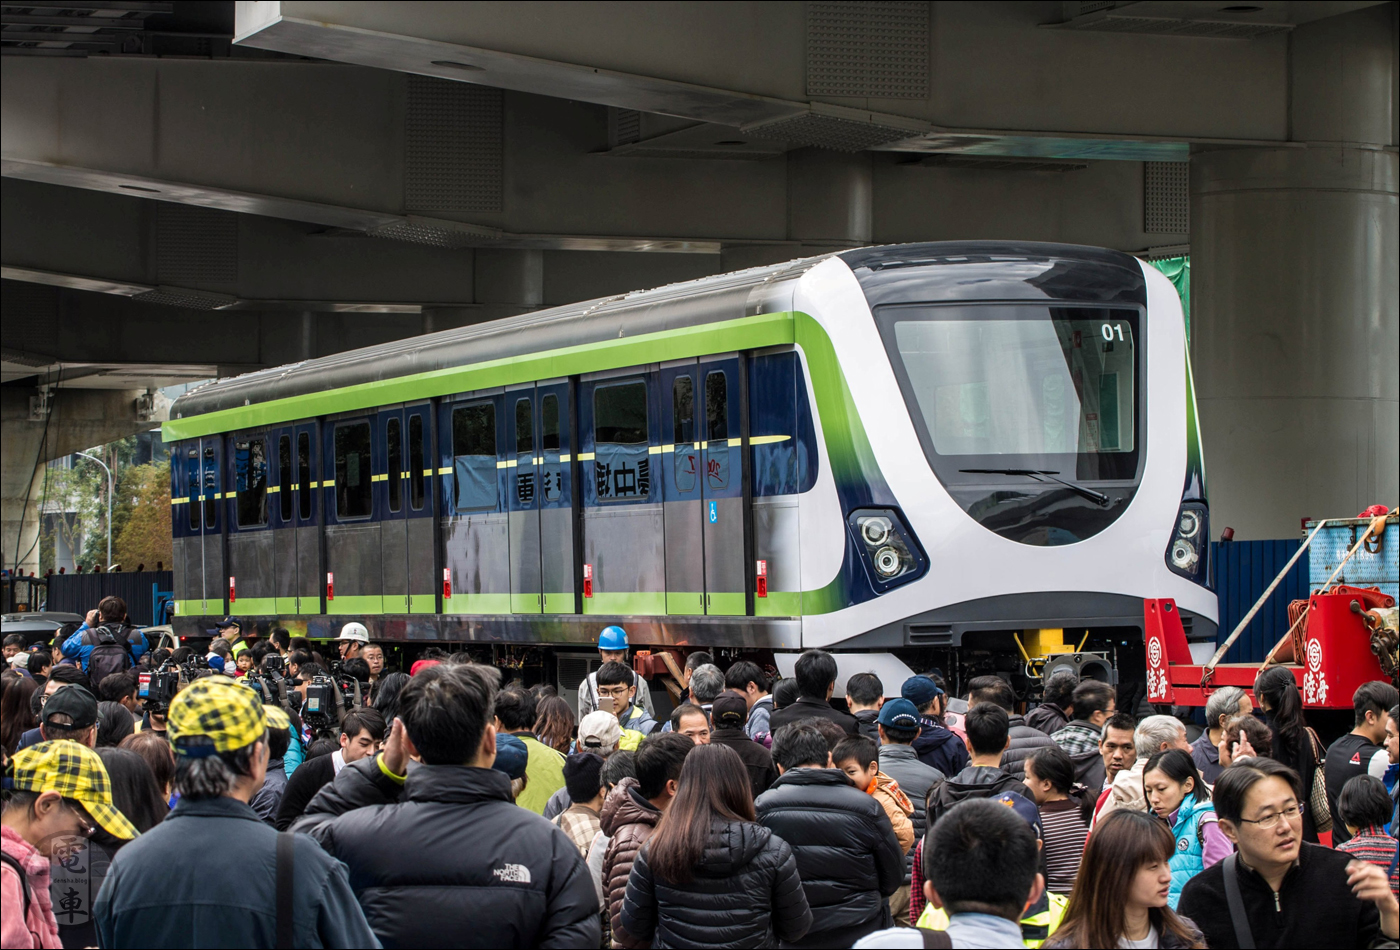 A Taichung Metro első járművének haknija Taichung belvárosában 2017 februárjában. Az idén immár 4 éves járművek a kelleténél tovább duzzasztották a hánytatott sorsú metróvonal költségvetését.